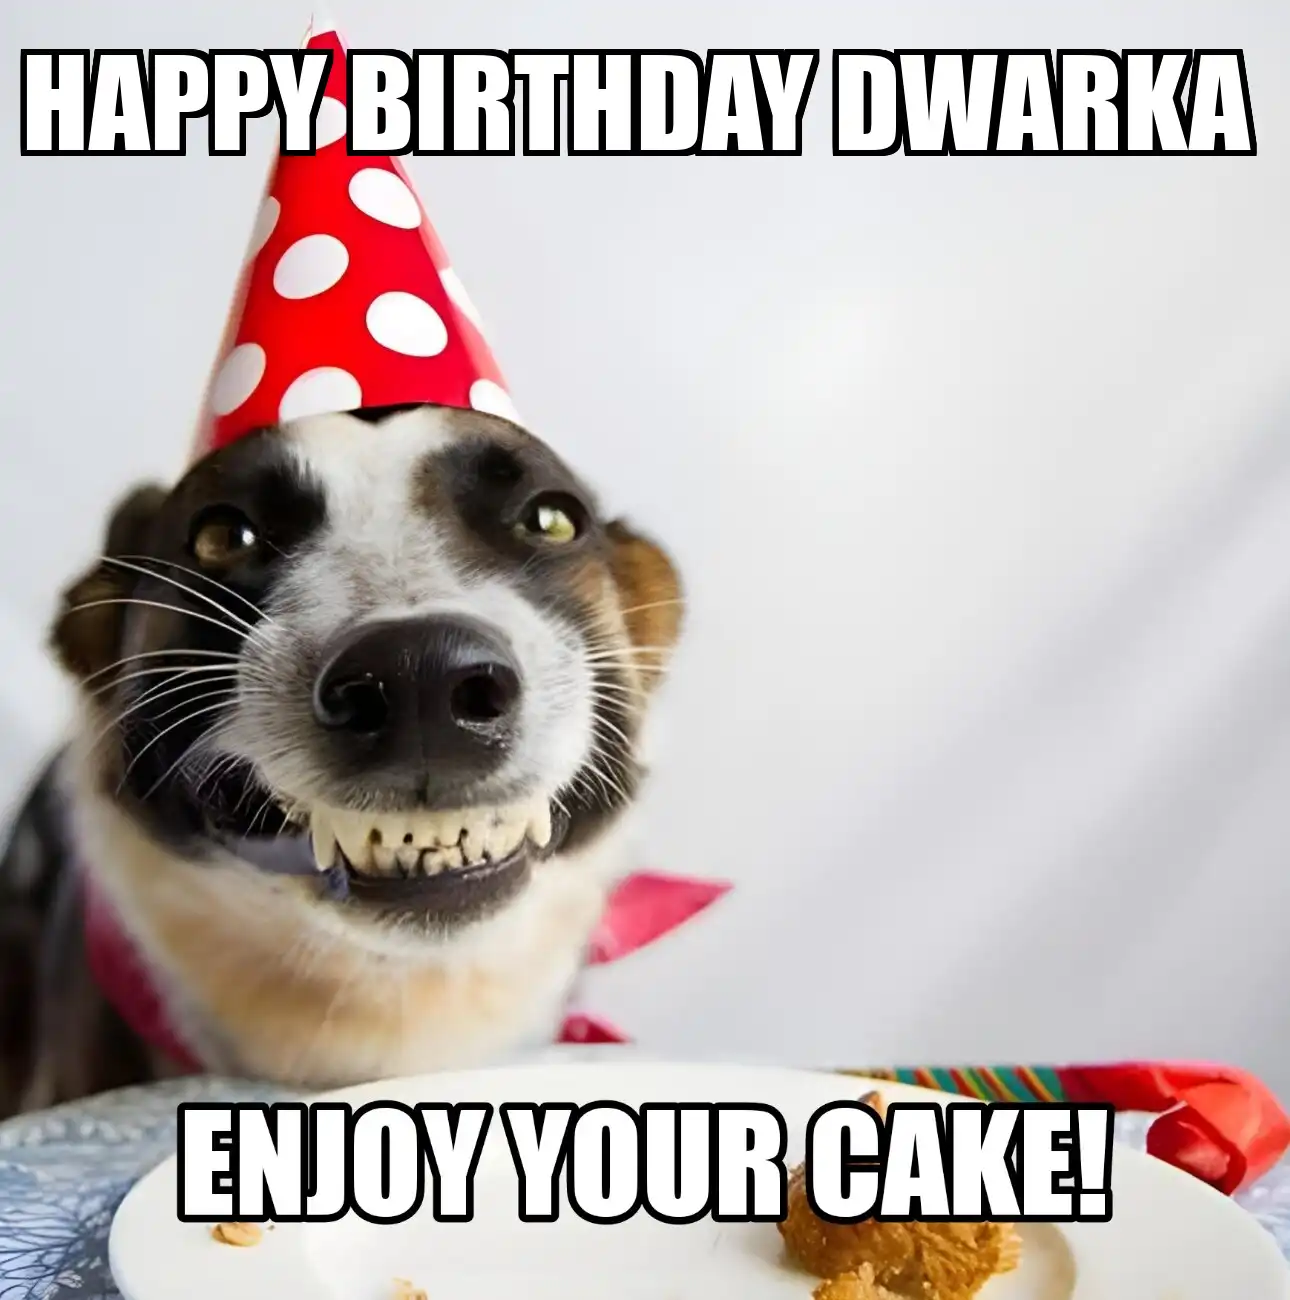 Happy Birthday Dwarka Enjoy Your Cake Dog Meme